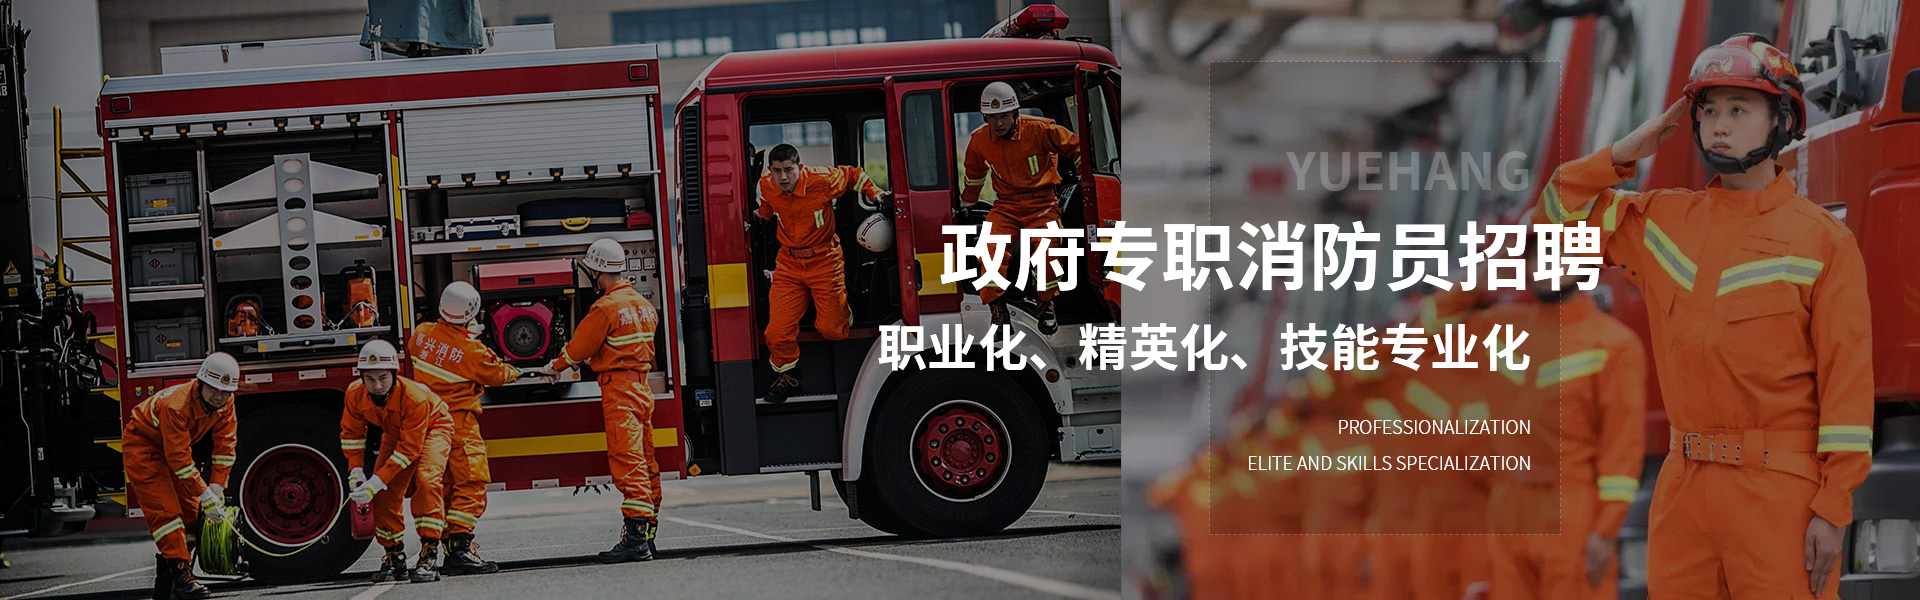 重庆消防派遣公司